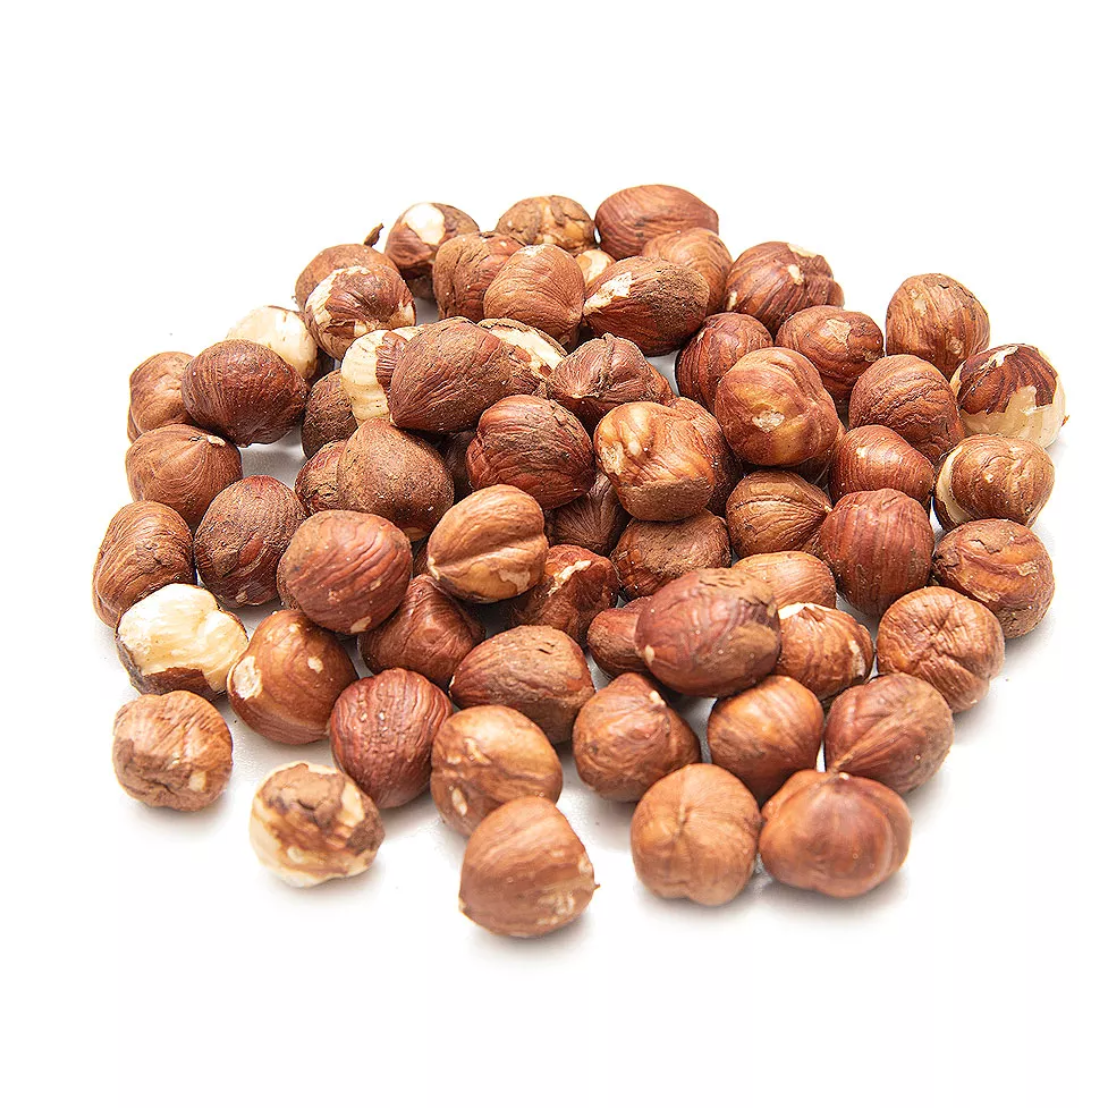 אגוזי לוז טבעיים - 250 גרם